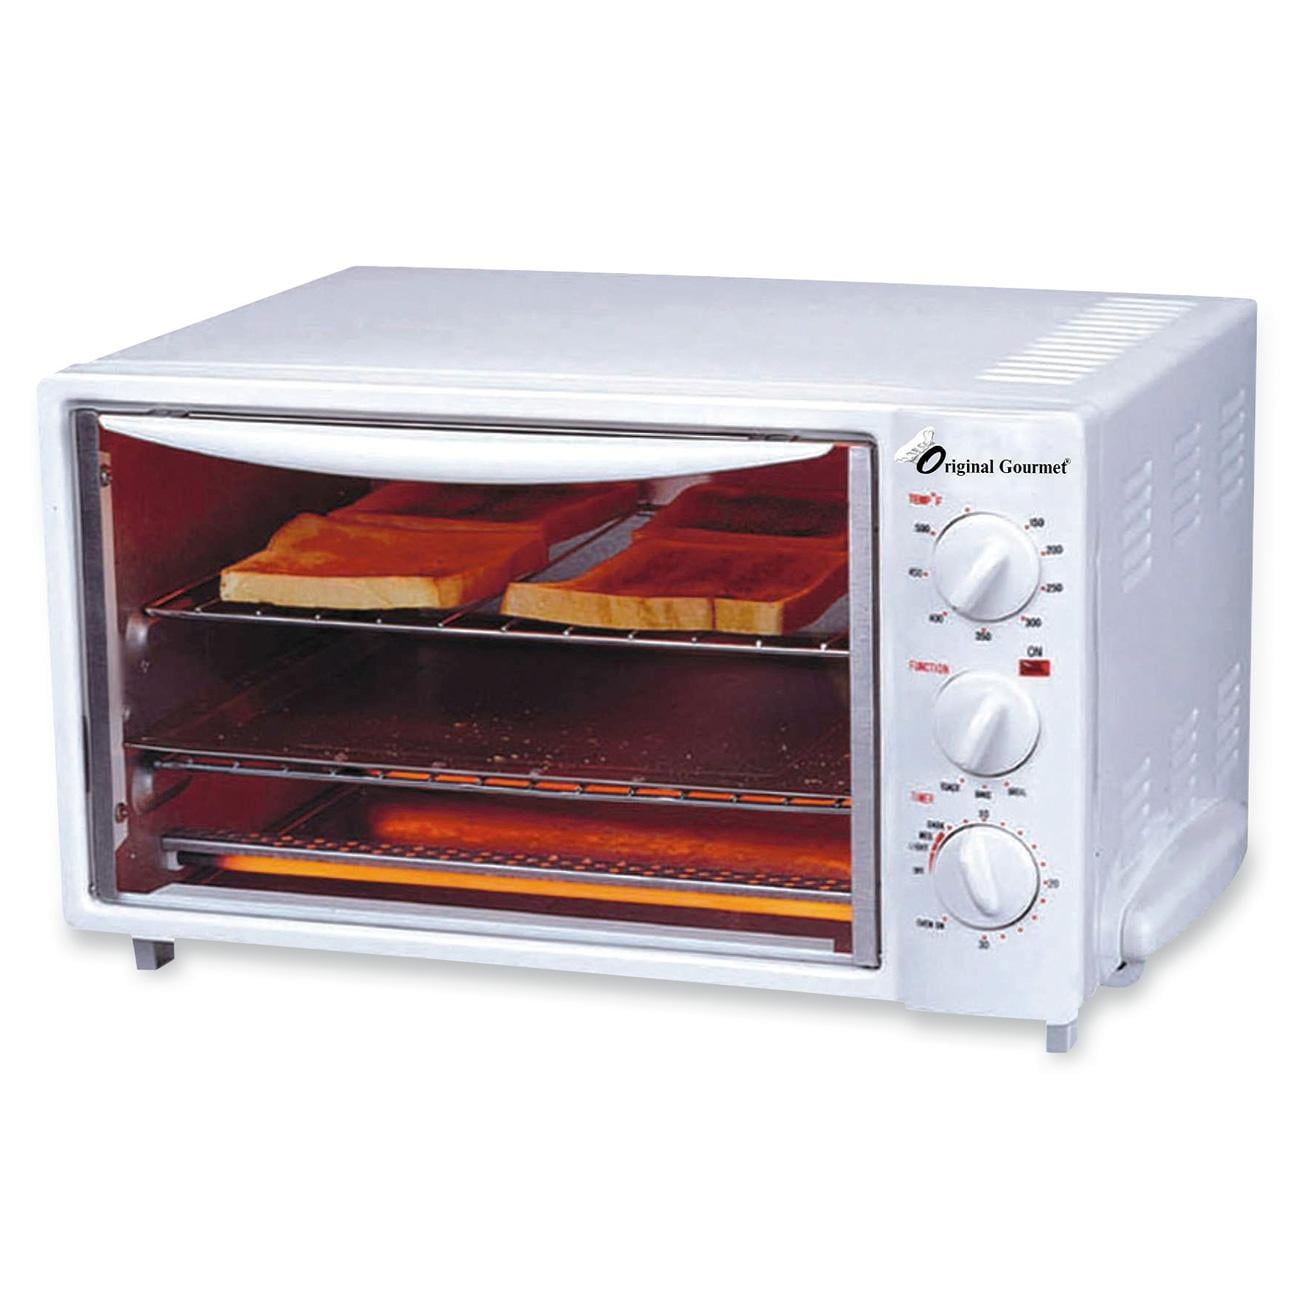 Gourmet Toaster Oven, White - OG20 - Walmart.com